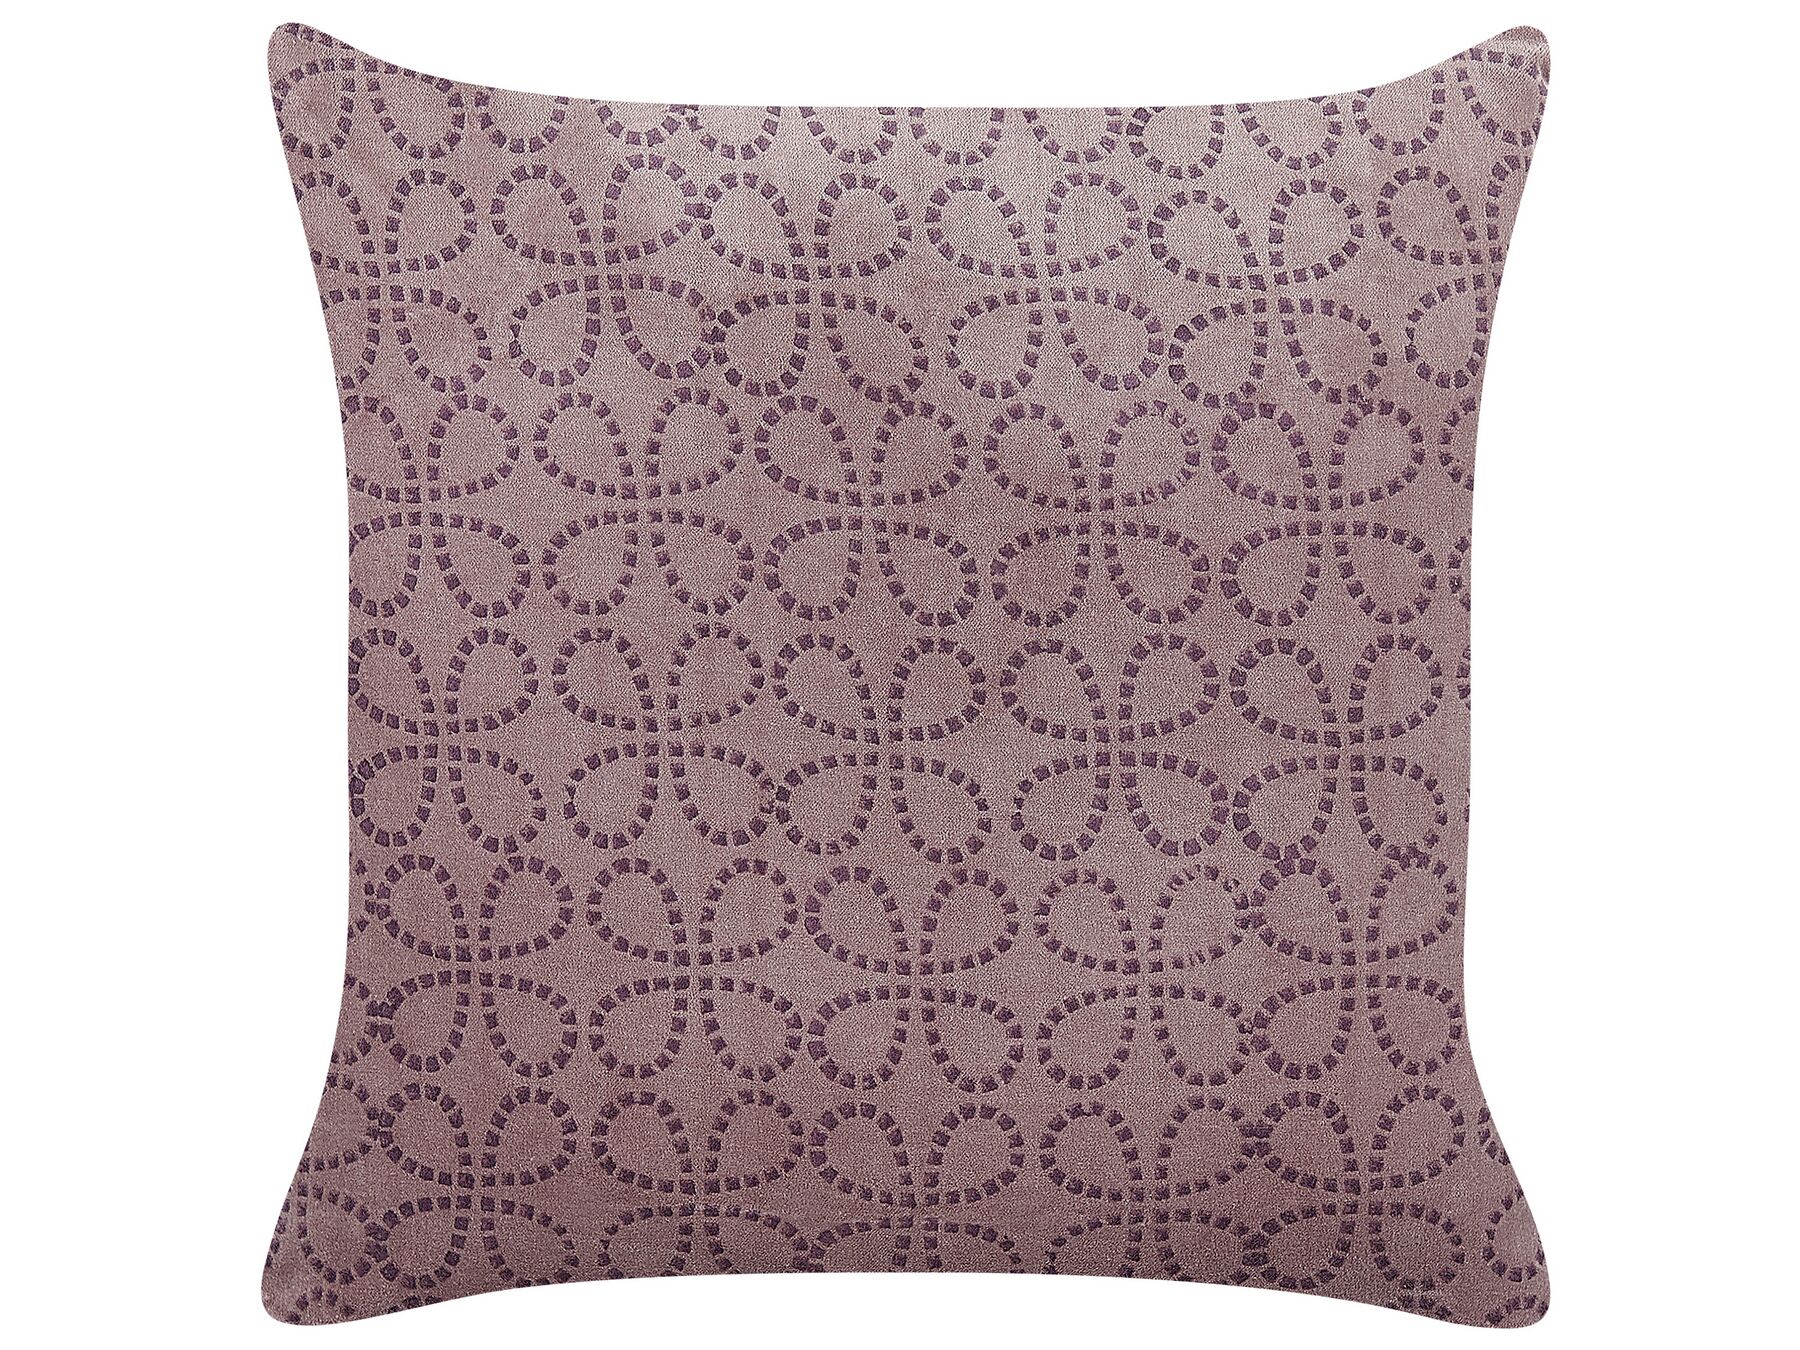 Welurowa poduszka dekoracyjna wzór geometryczny 45 x 45 cm różowa LARKSPUR_838401